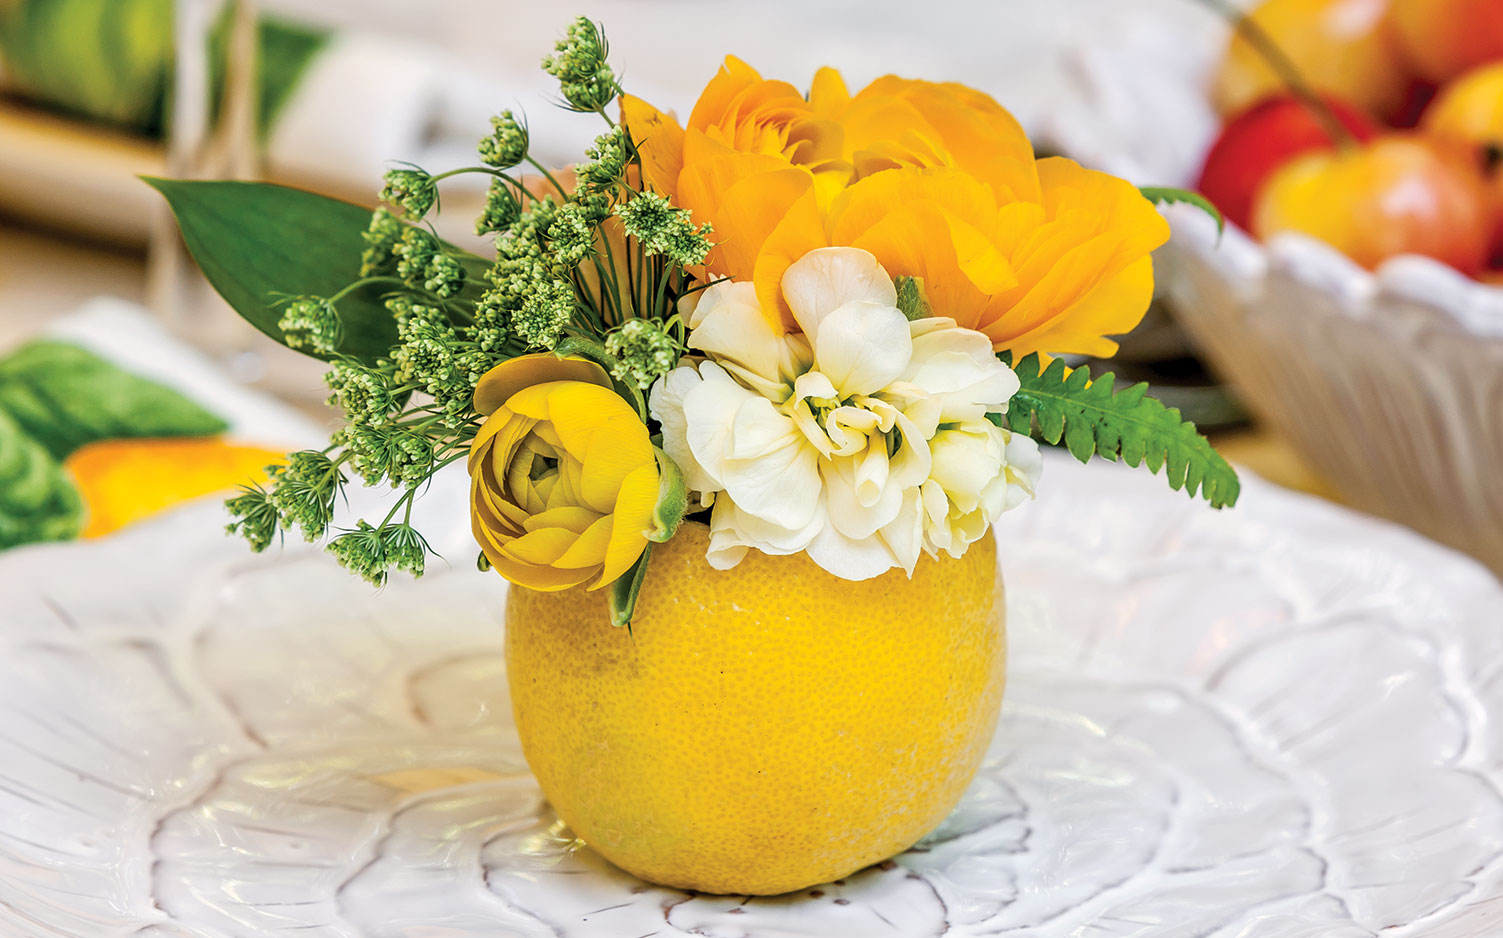 Spring entertaining ideas, lemon vase